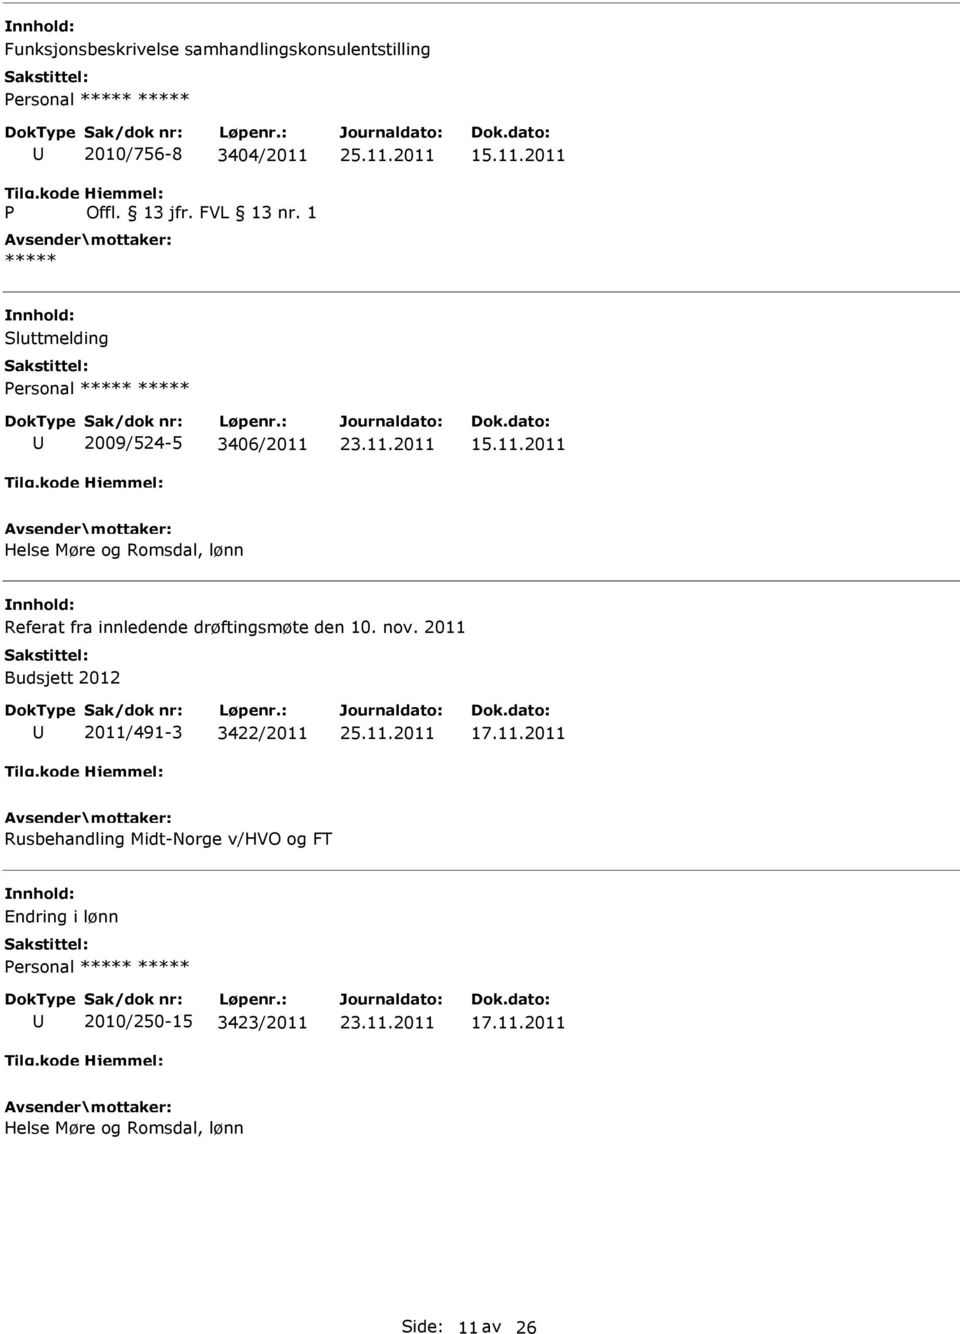 nov. 2011 Budsjett 2012 2011/491-3 3422/2011 17.11.2011 Rusbehandling Midt-Norge v/hvo og FT Endring i lønn ersonal 2010/250-15 3423/2011 17.